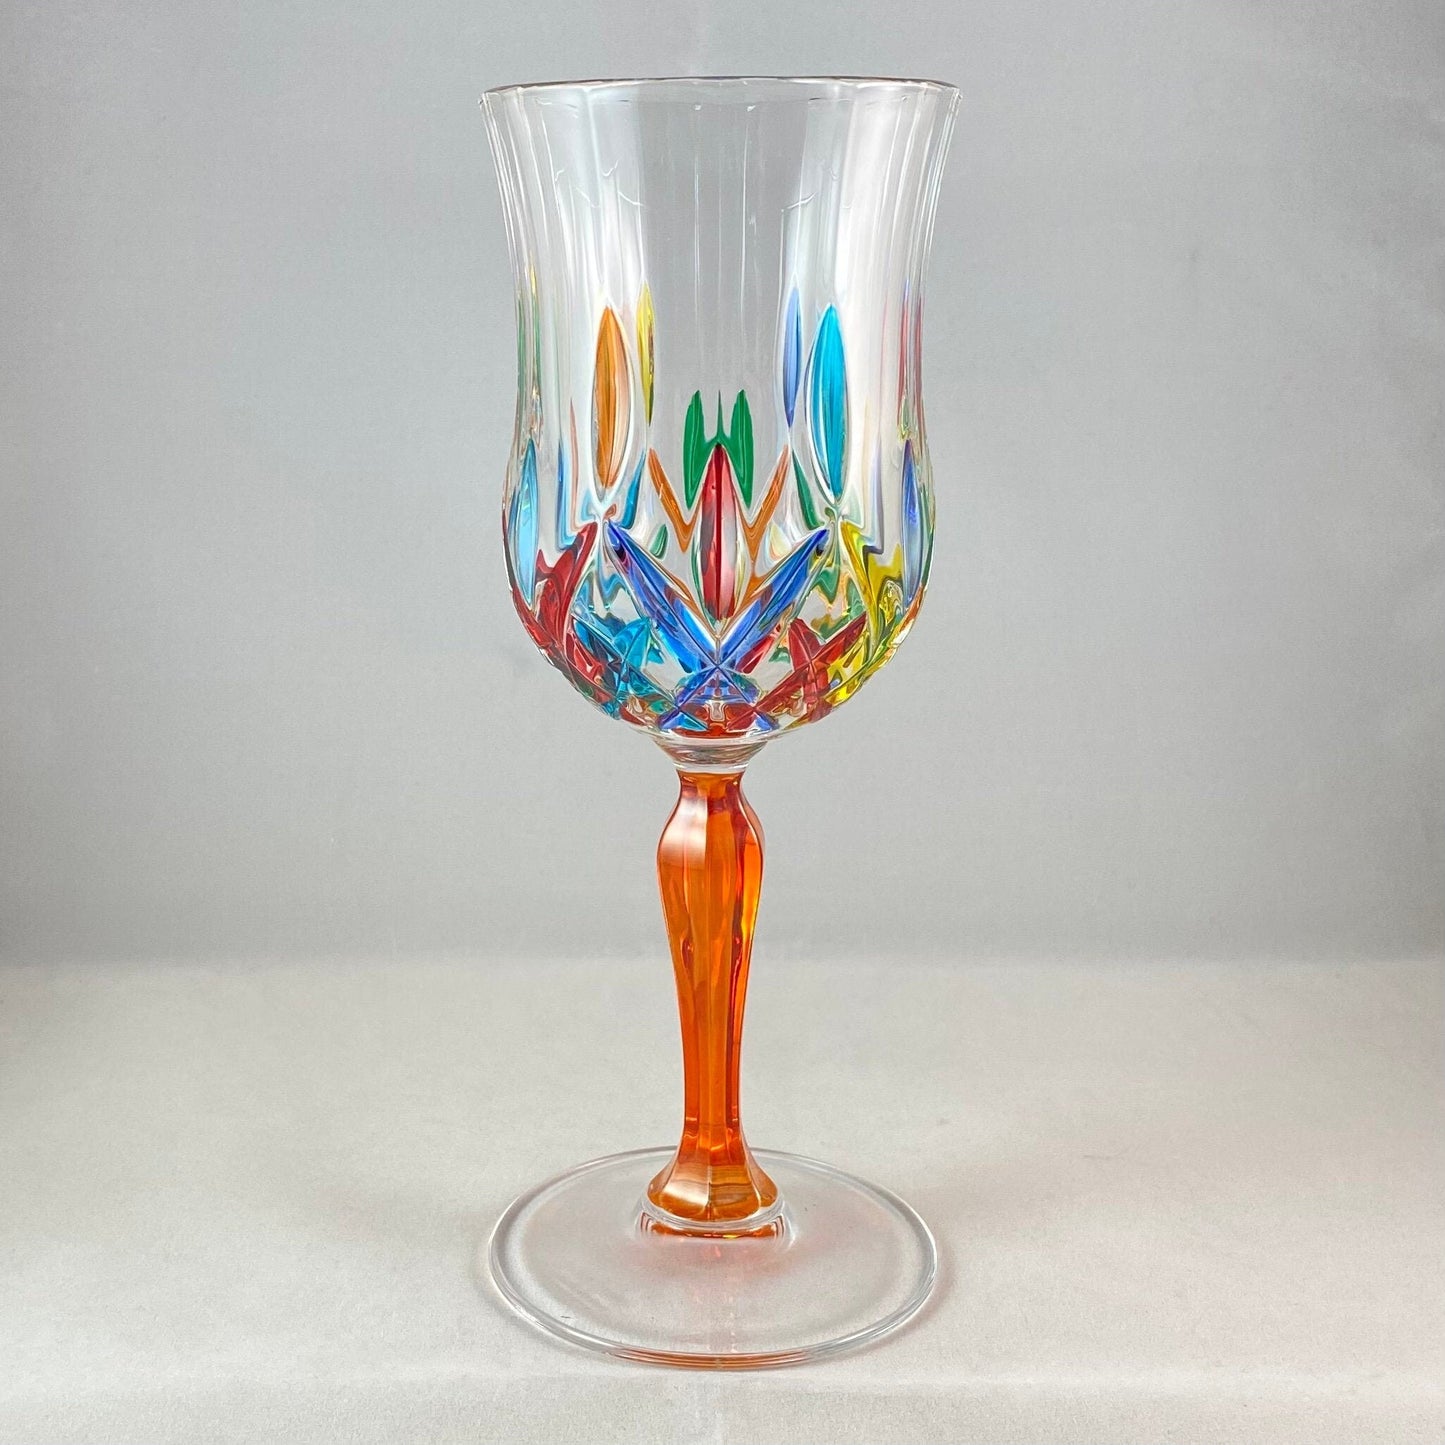 Orange Stem Opera Venetian Glass Wine Glass - Handmade in Italy, Colorful Murano Glass